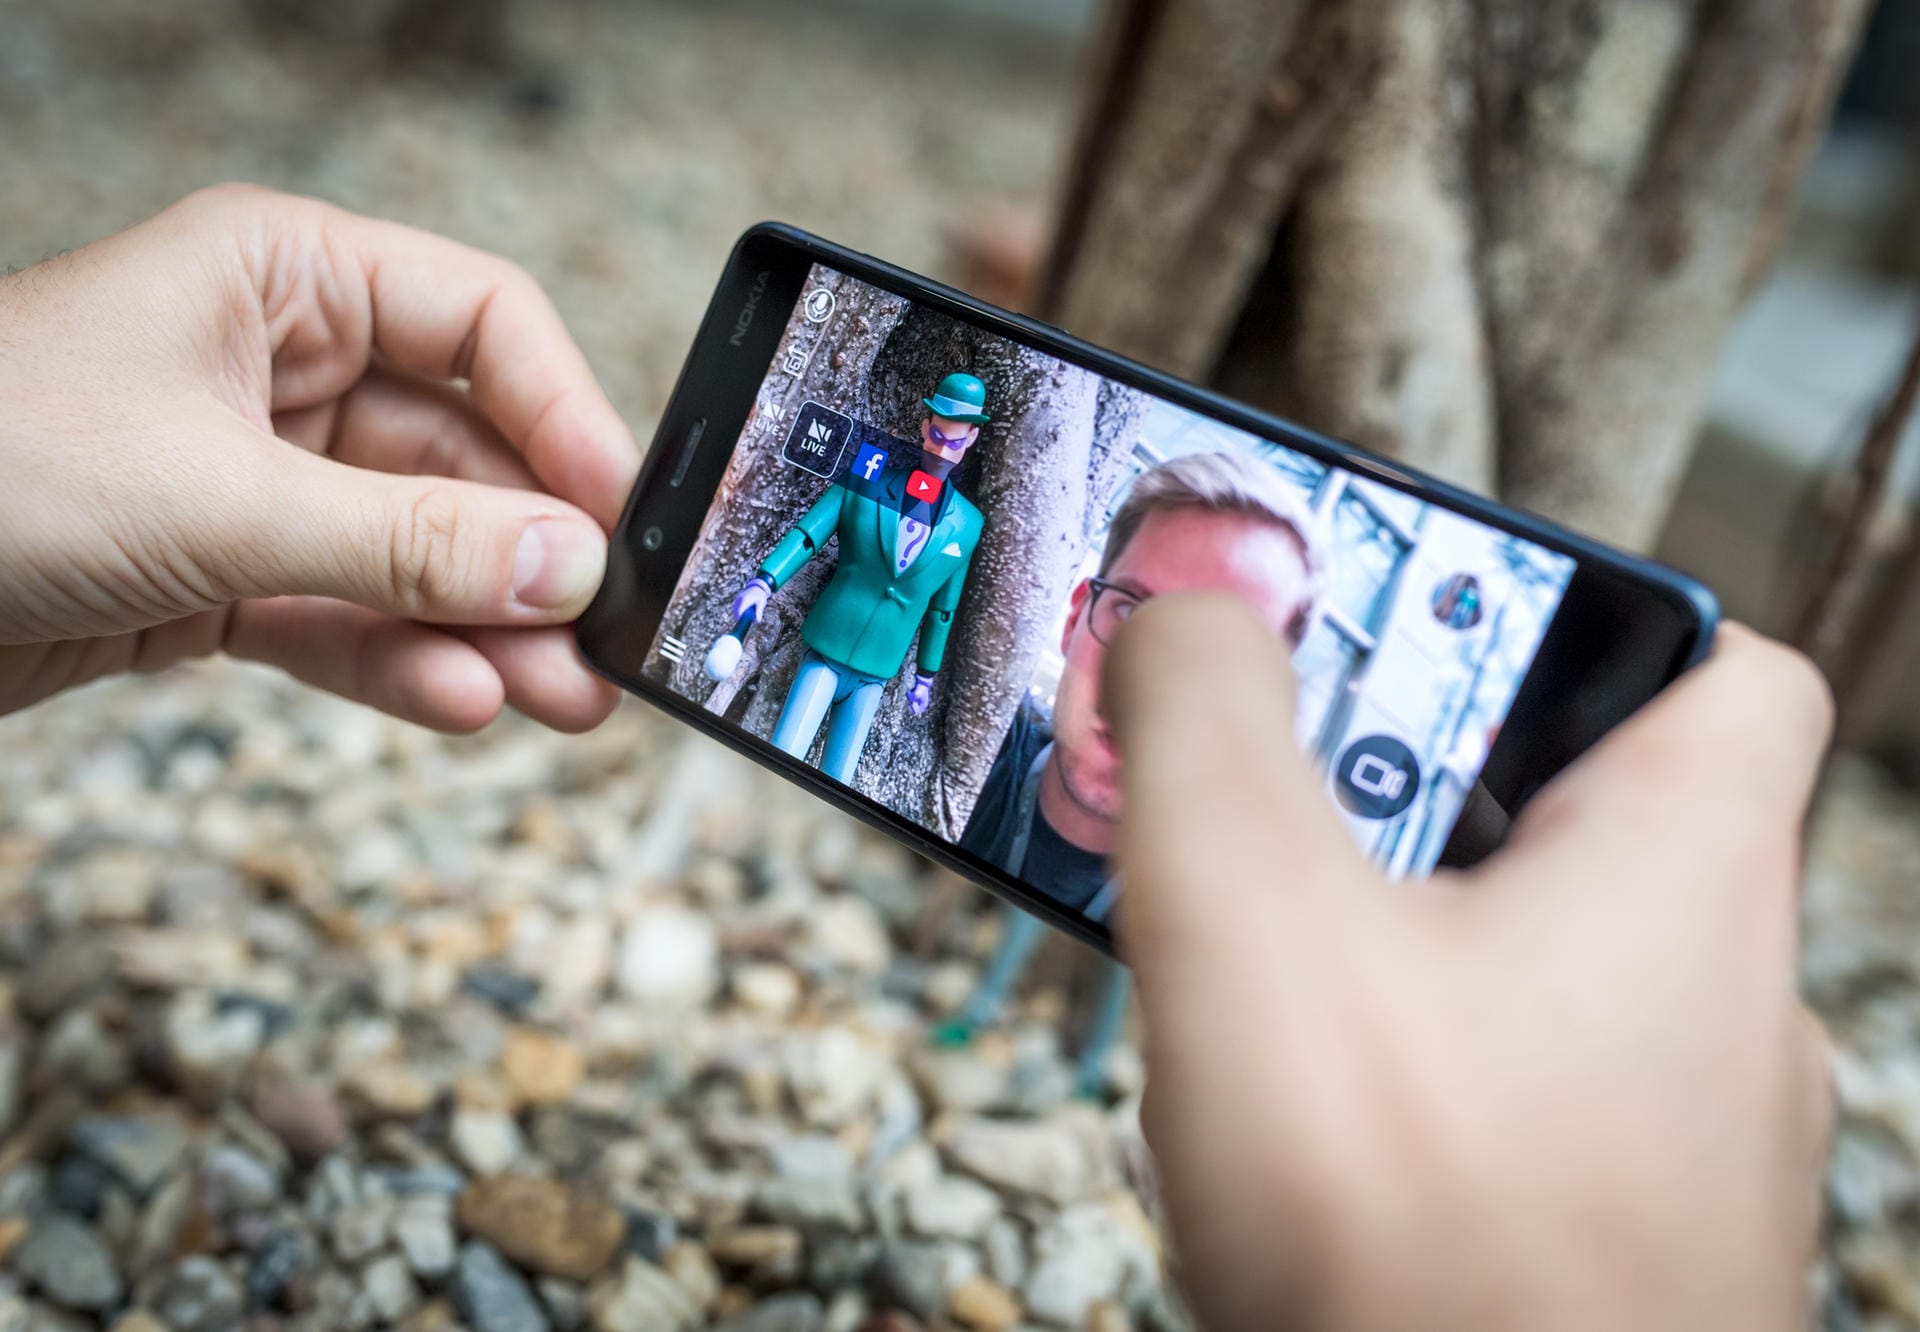 Simultane Aufzeichnung von Front- und Rückkamera ist nicht neu, das Nokia 8 setzt diese so genannten Bothies aber sehr einfach und praktisch ein. So können direkt aus der Kamera-App etwa Livestreams mit Bildern vom Filmenden und dem was er sieht, gestartet werden.